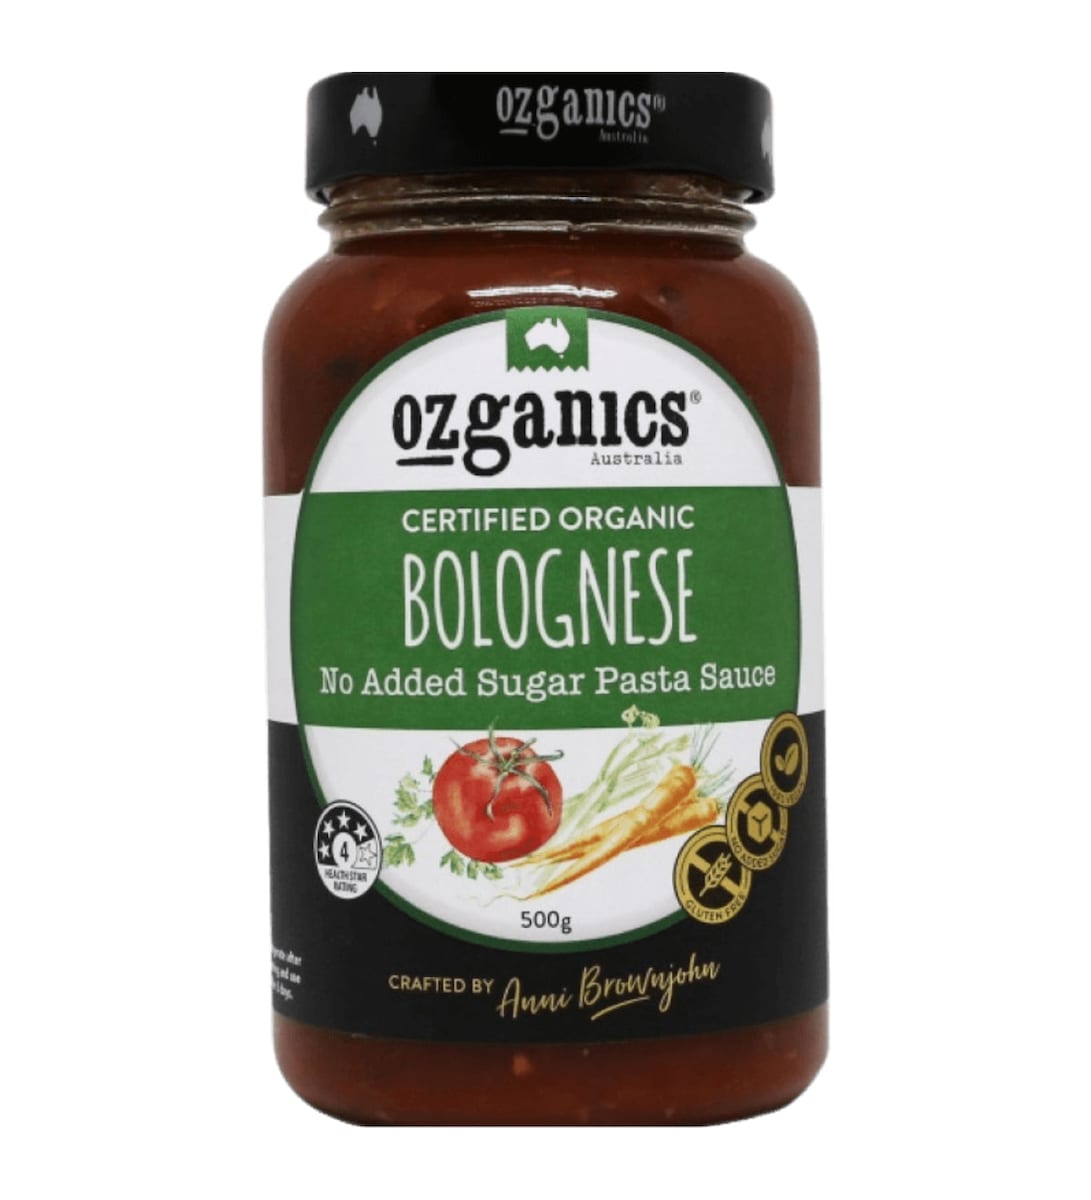 Ozganics Bolognese Pasta Sauce 500g